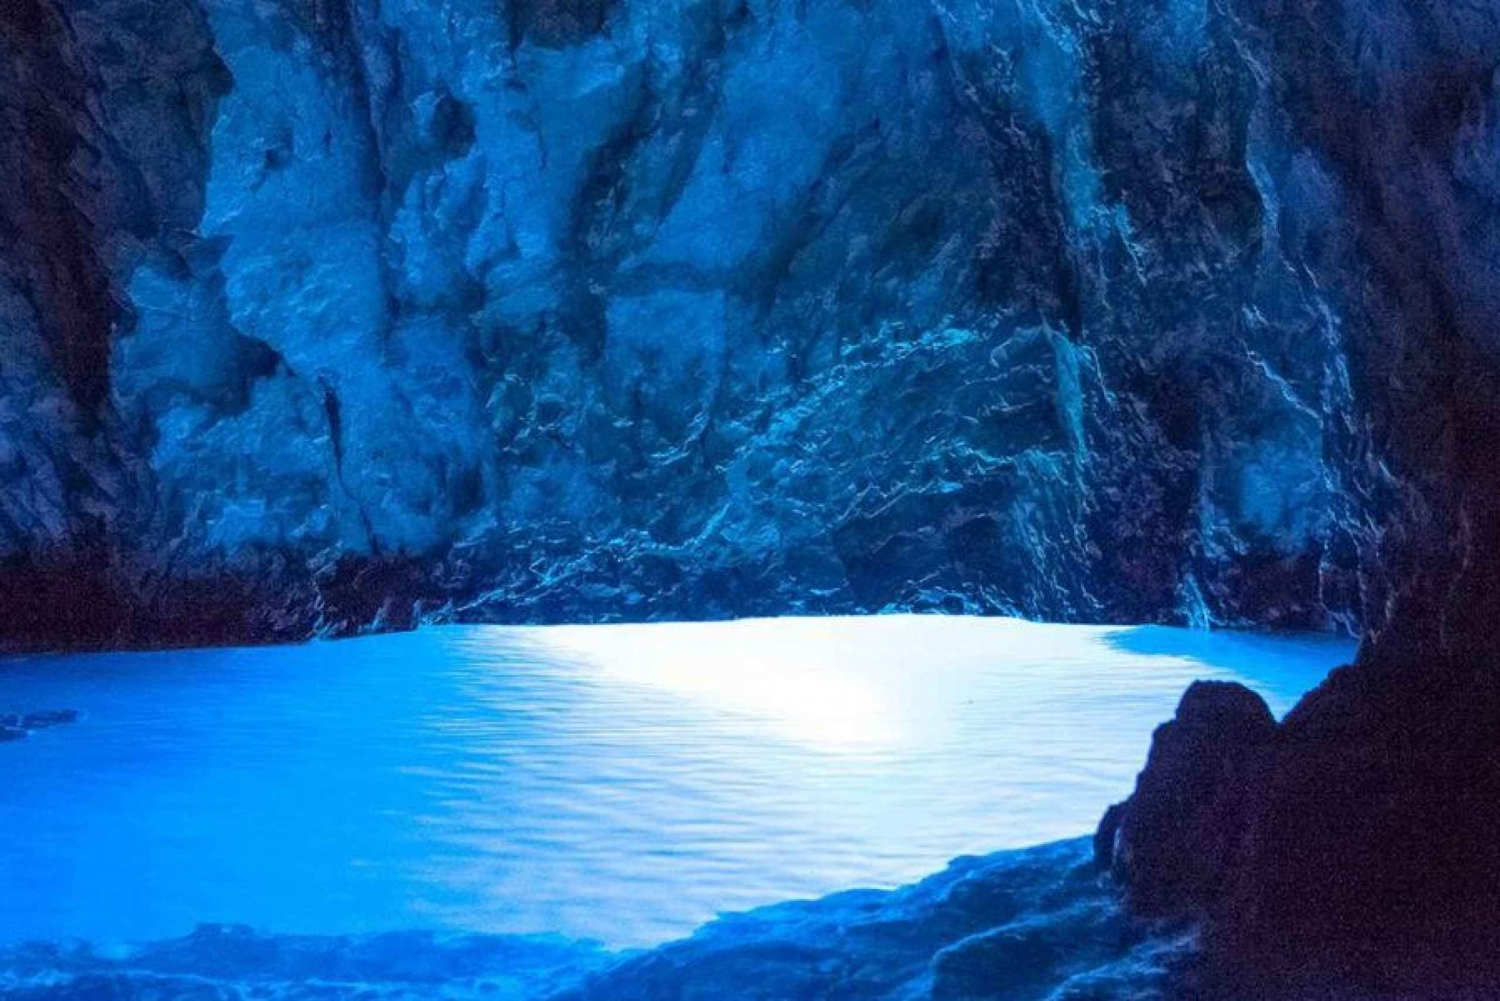 Da Trogir e Spalato: Grotta Azzurra e 5 isole tour di un giorno